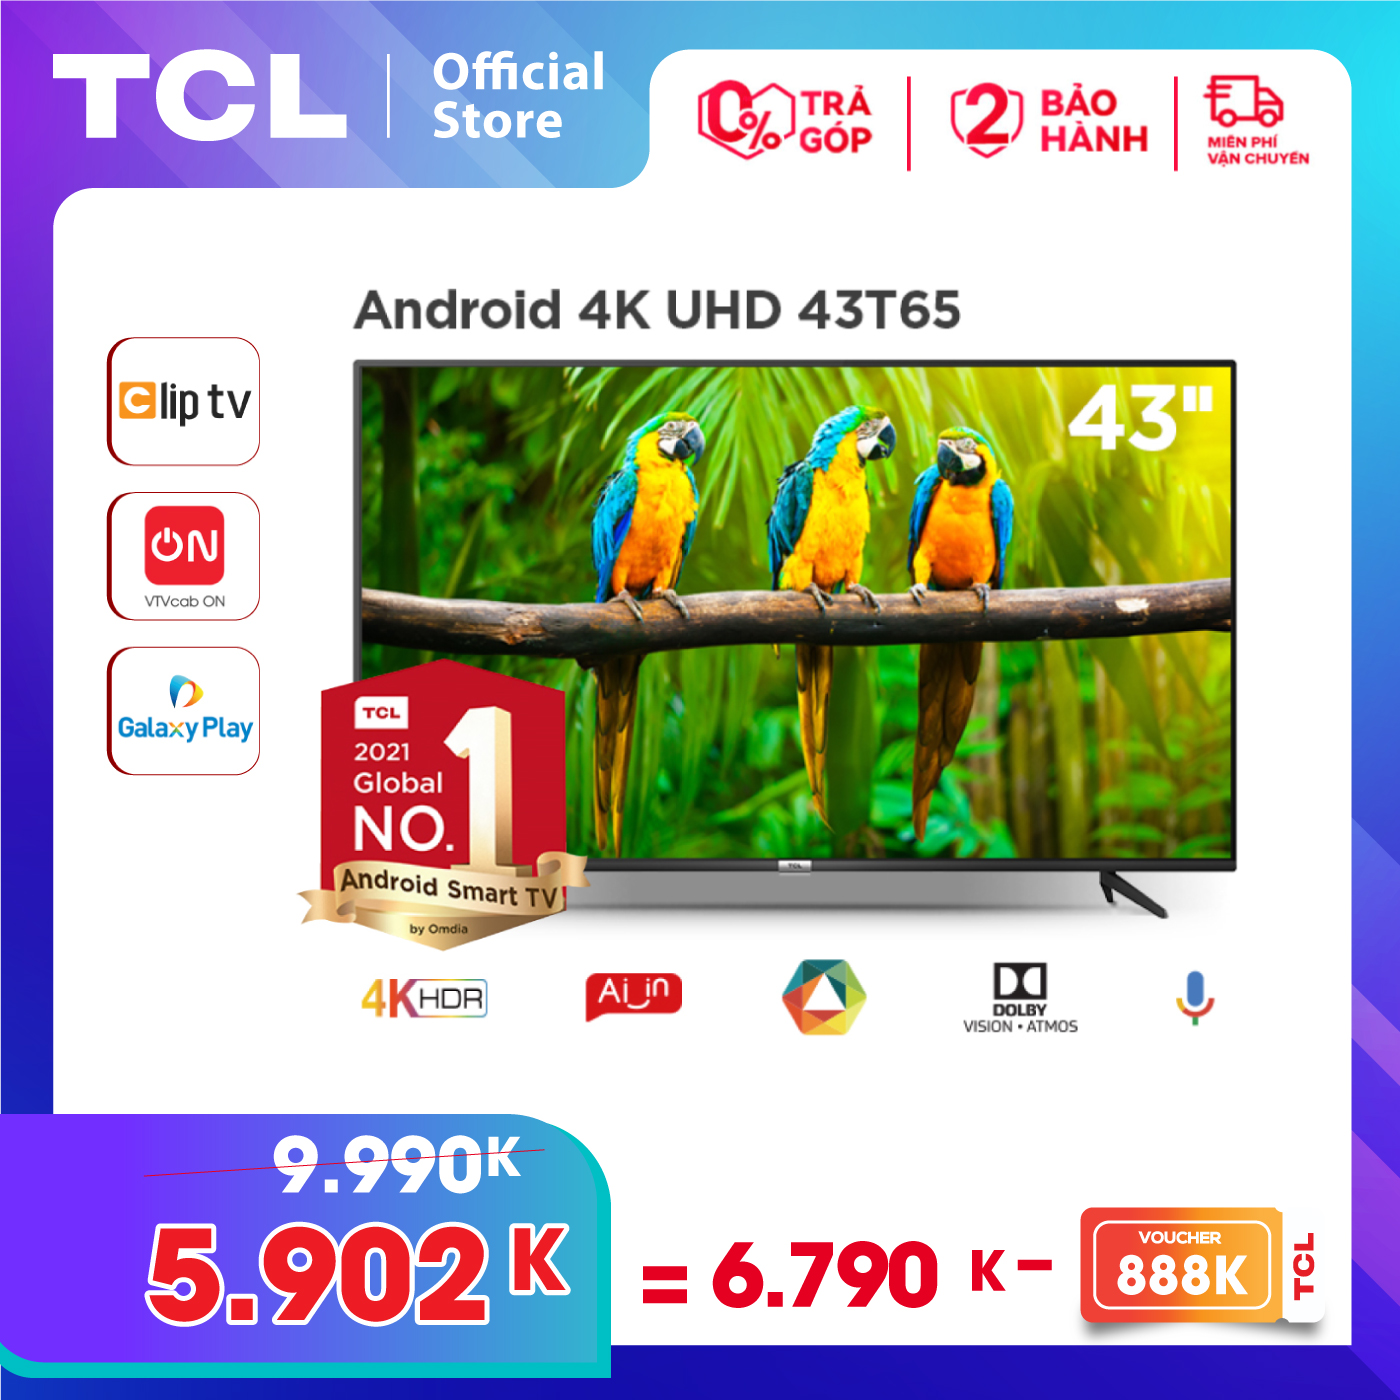 [VOUCHER 888K] Tivi 4K UHD Android Tivi TCL 43T65 - Gam Màu Rộng, HDR, Dolby Audio - Bảo Hành 2...